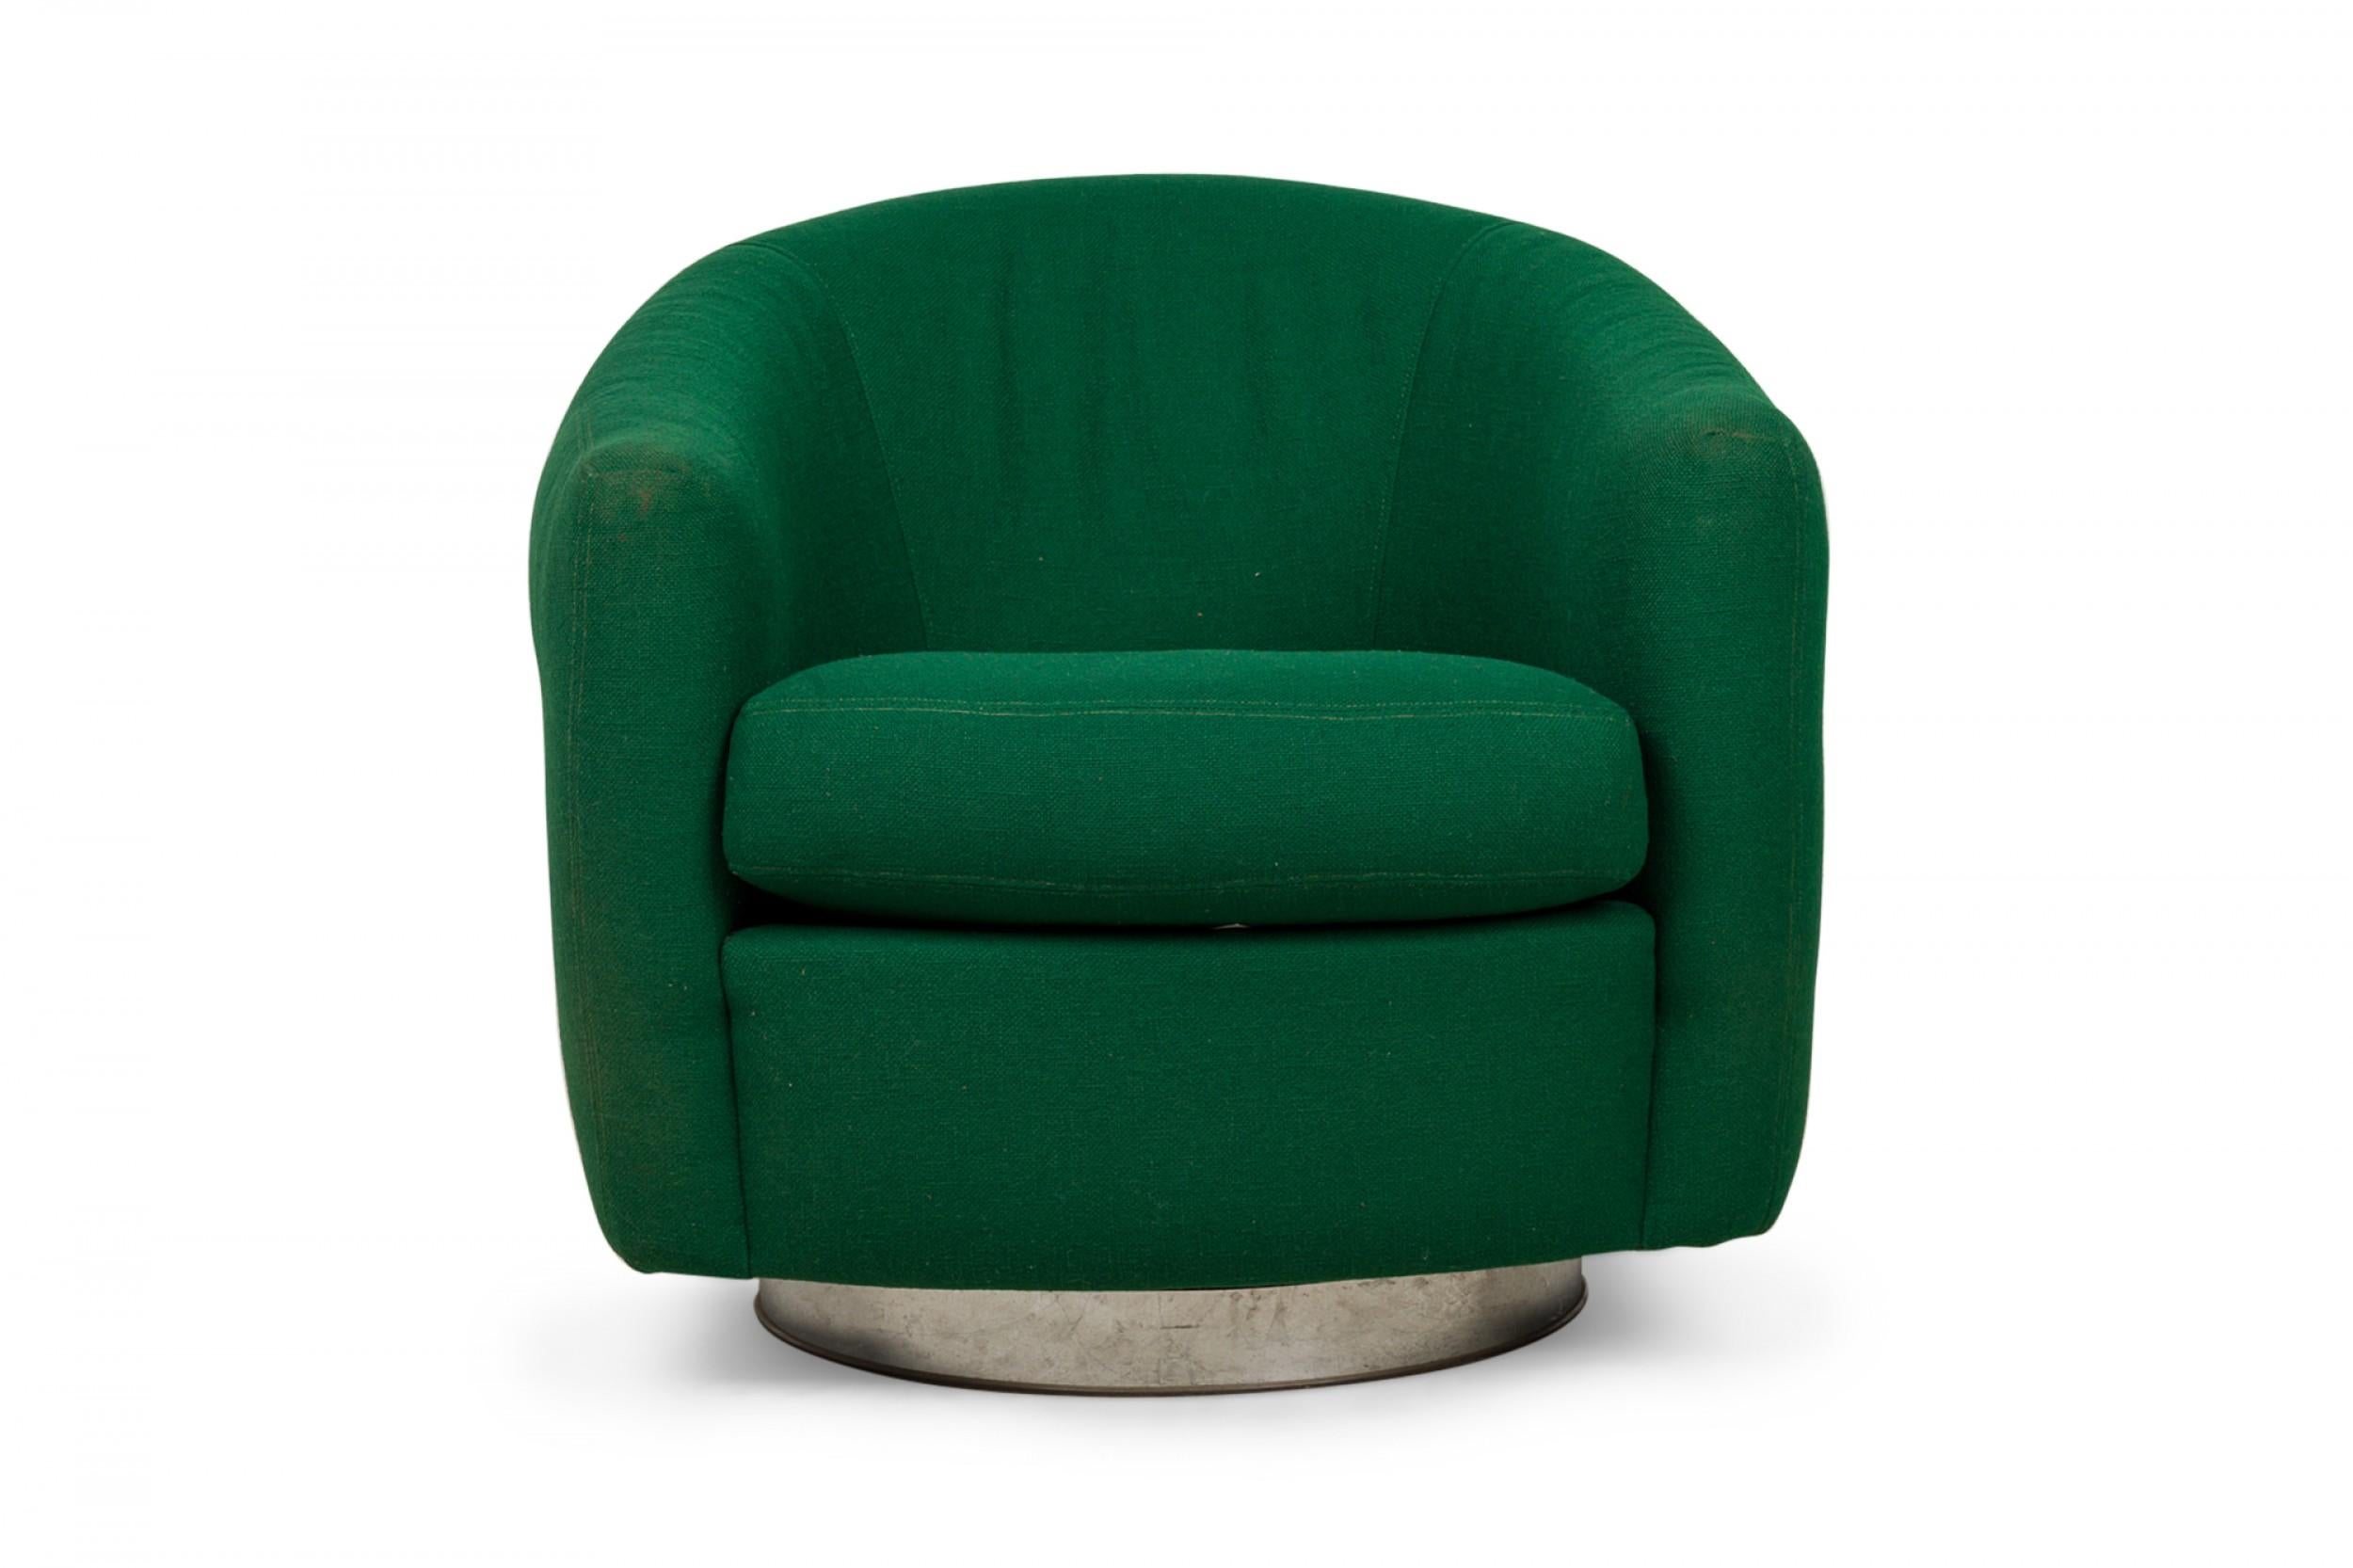 PAIRE de fauteuils de salon pivotants de forme tubulaire, de style américain du milieu du siècle, tapissés de tissu vert émeraude et reposant sur des bases circulaires pivotantes chromées. (MILO BAUGHMAN)(PRIX PAR PAIRE)